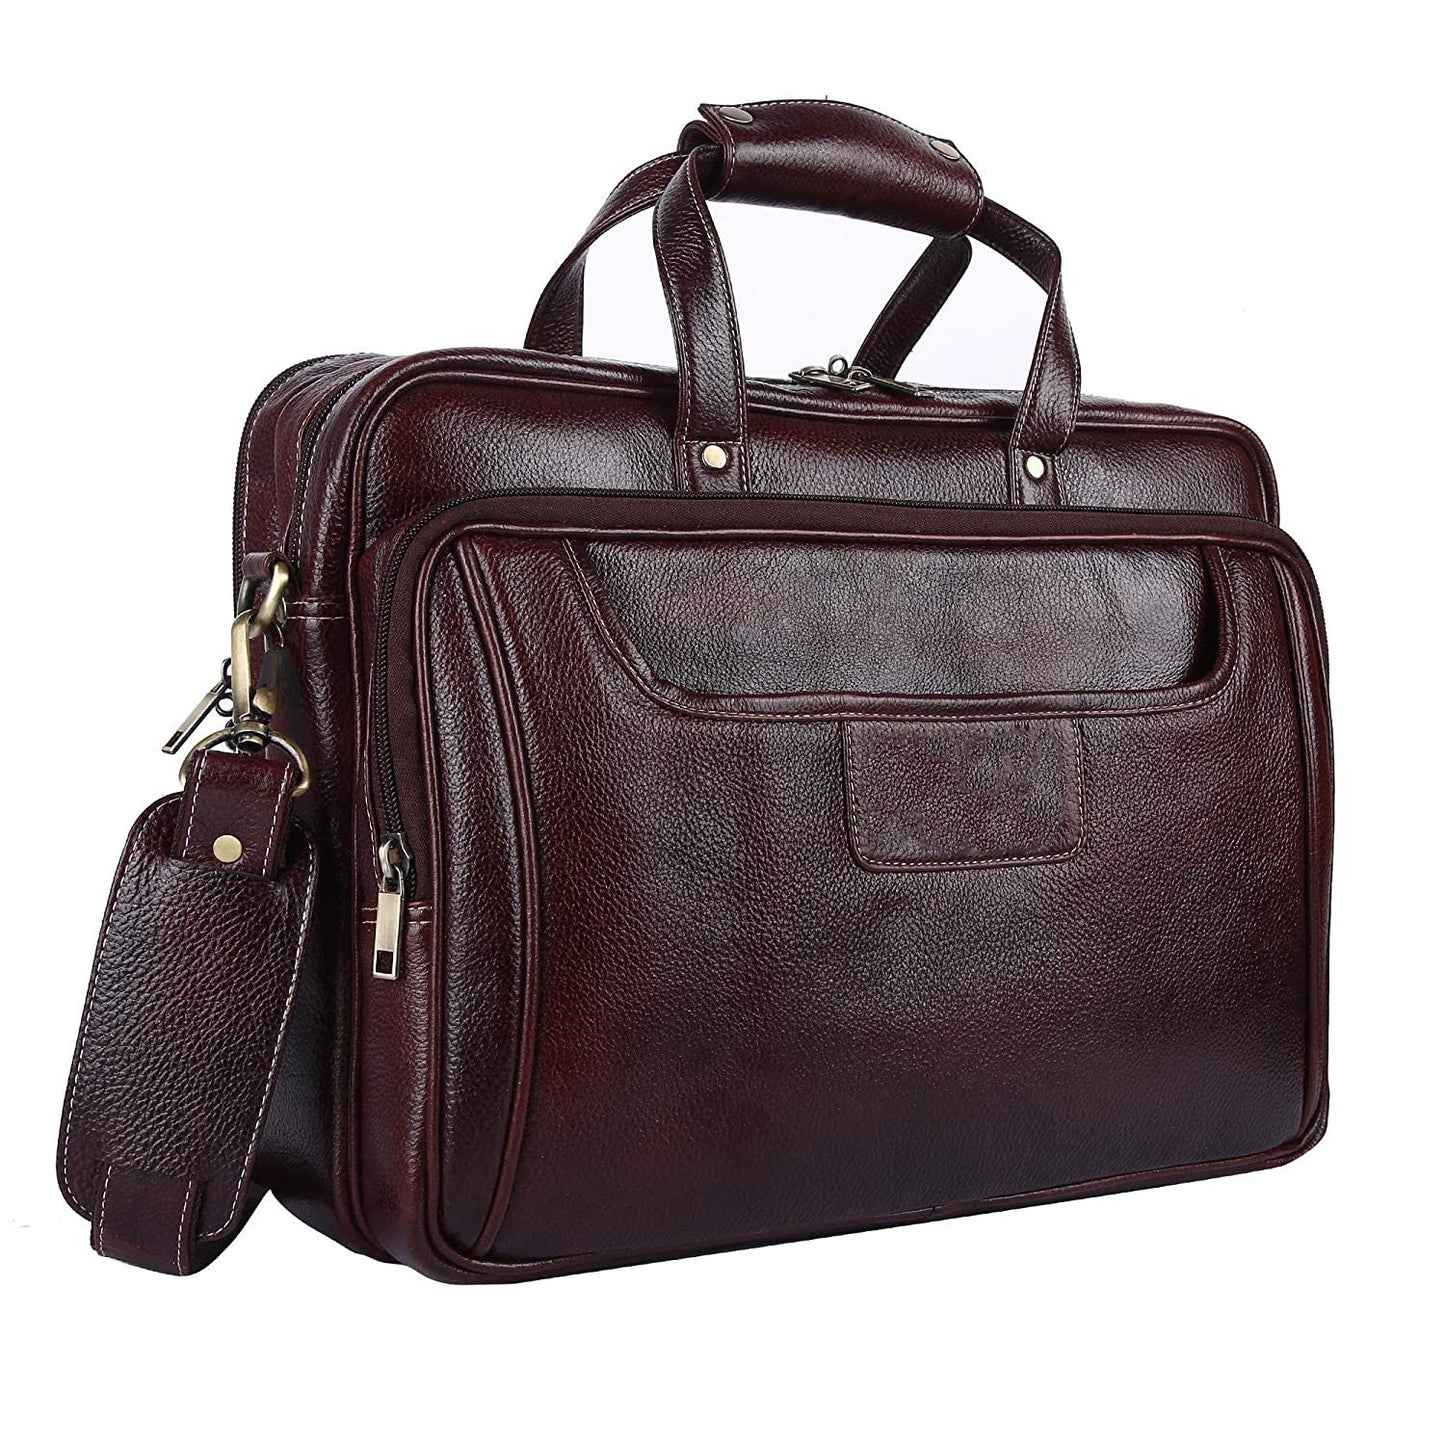 LINDSEY STREET Genuine Leather Laptop Messenger Bag for Men | Leather Briefcase | Leather Office Bag Men | Laptop MacBook iPad Handbag